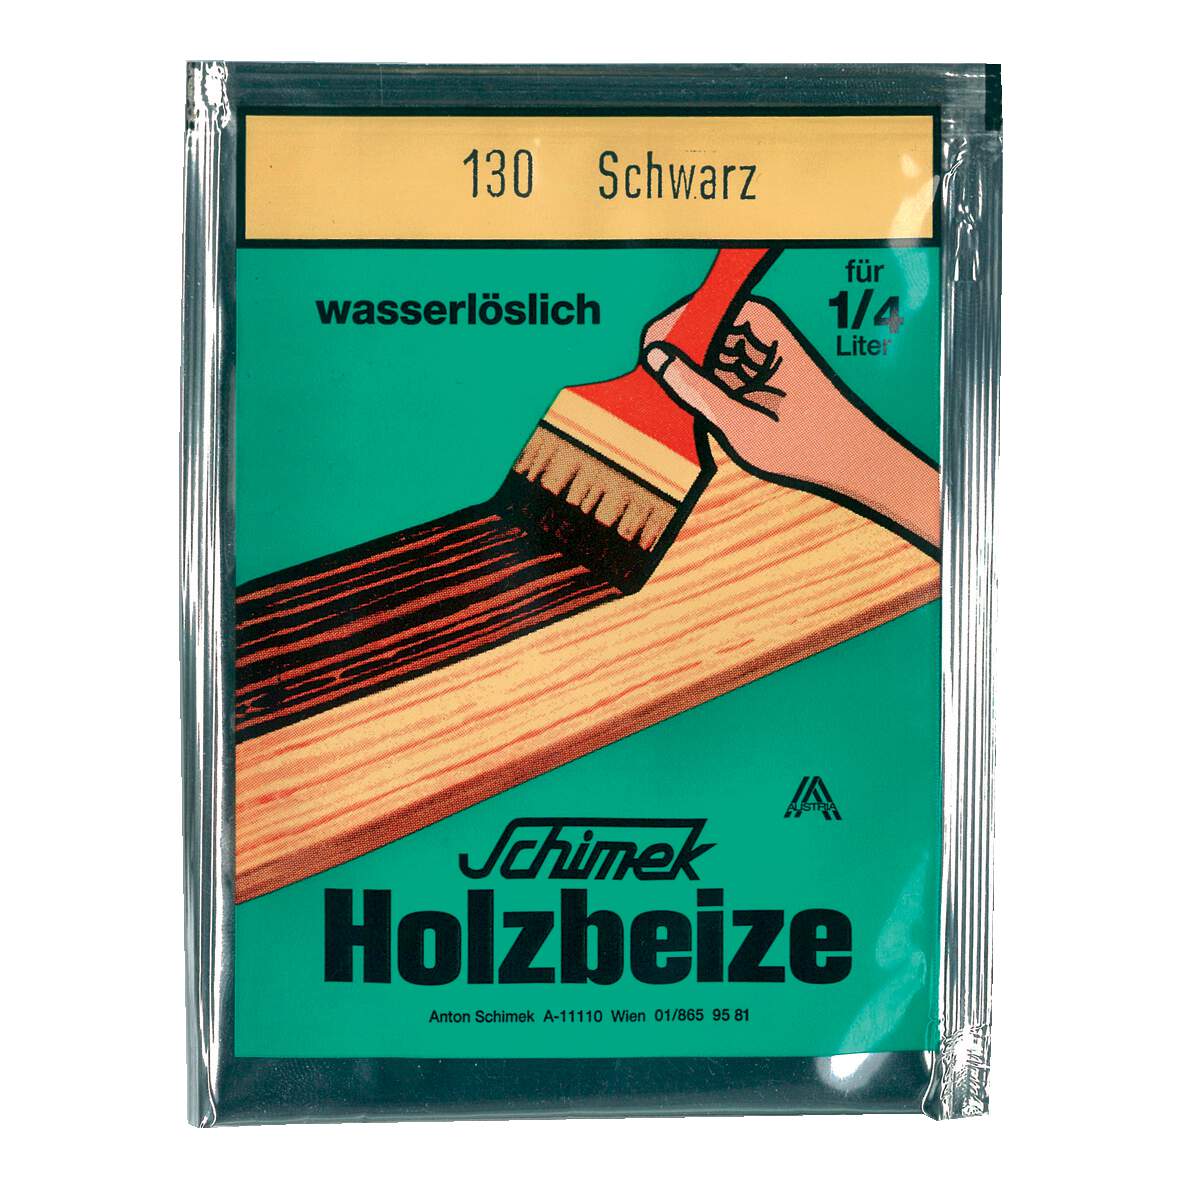 1216624 - Holzbeize Eichenbraun hell Nr.104 wasserlöslich